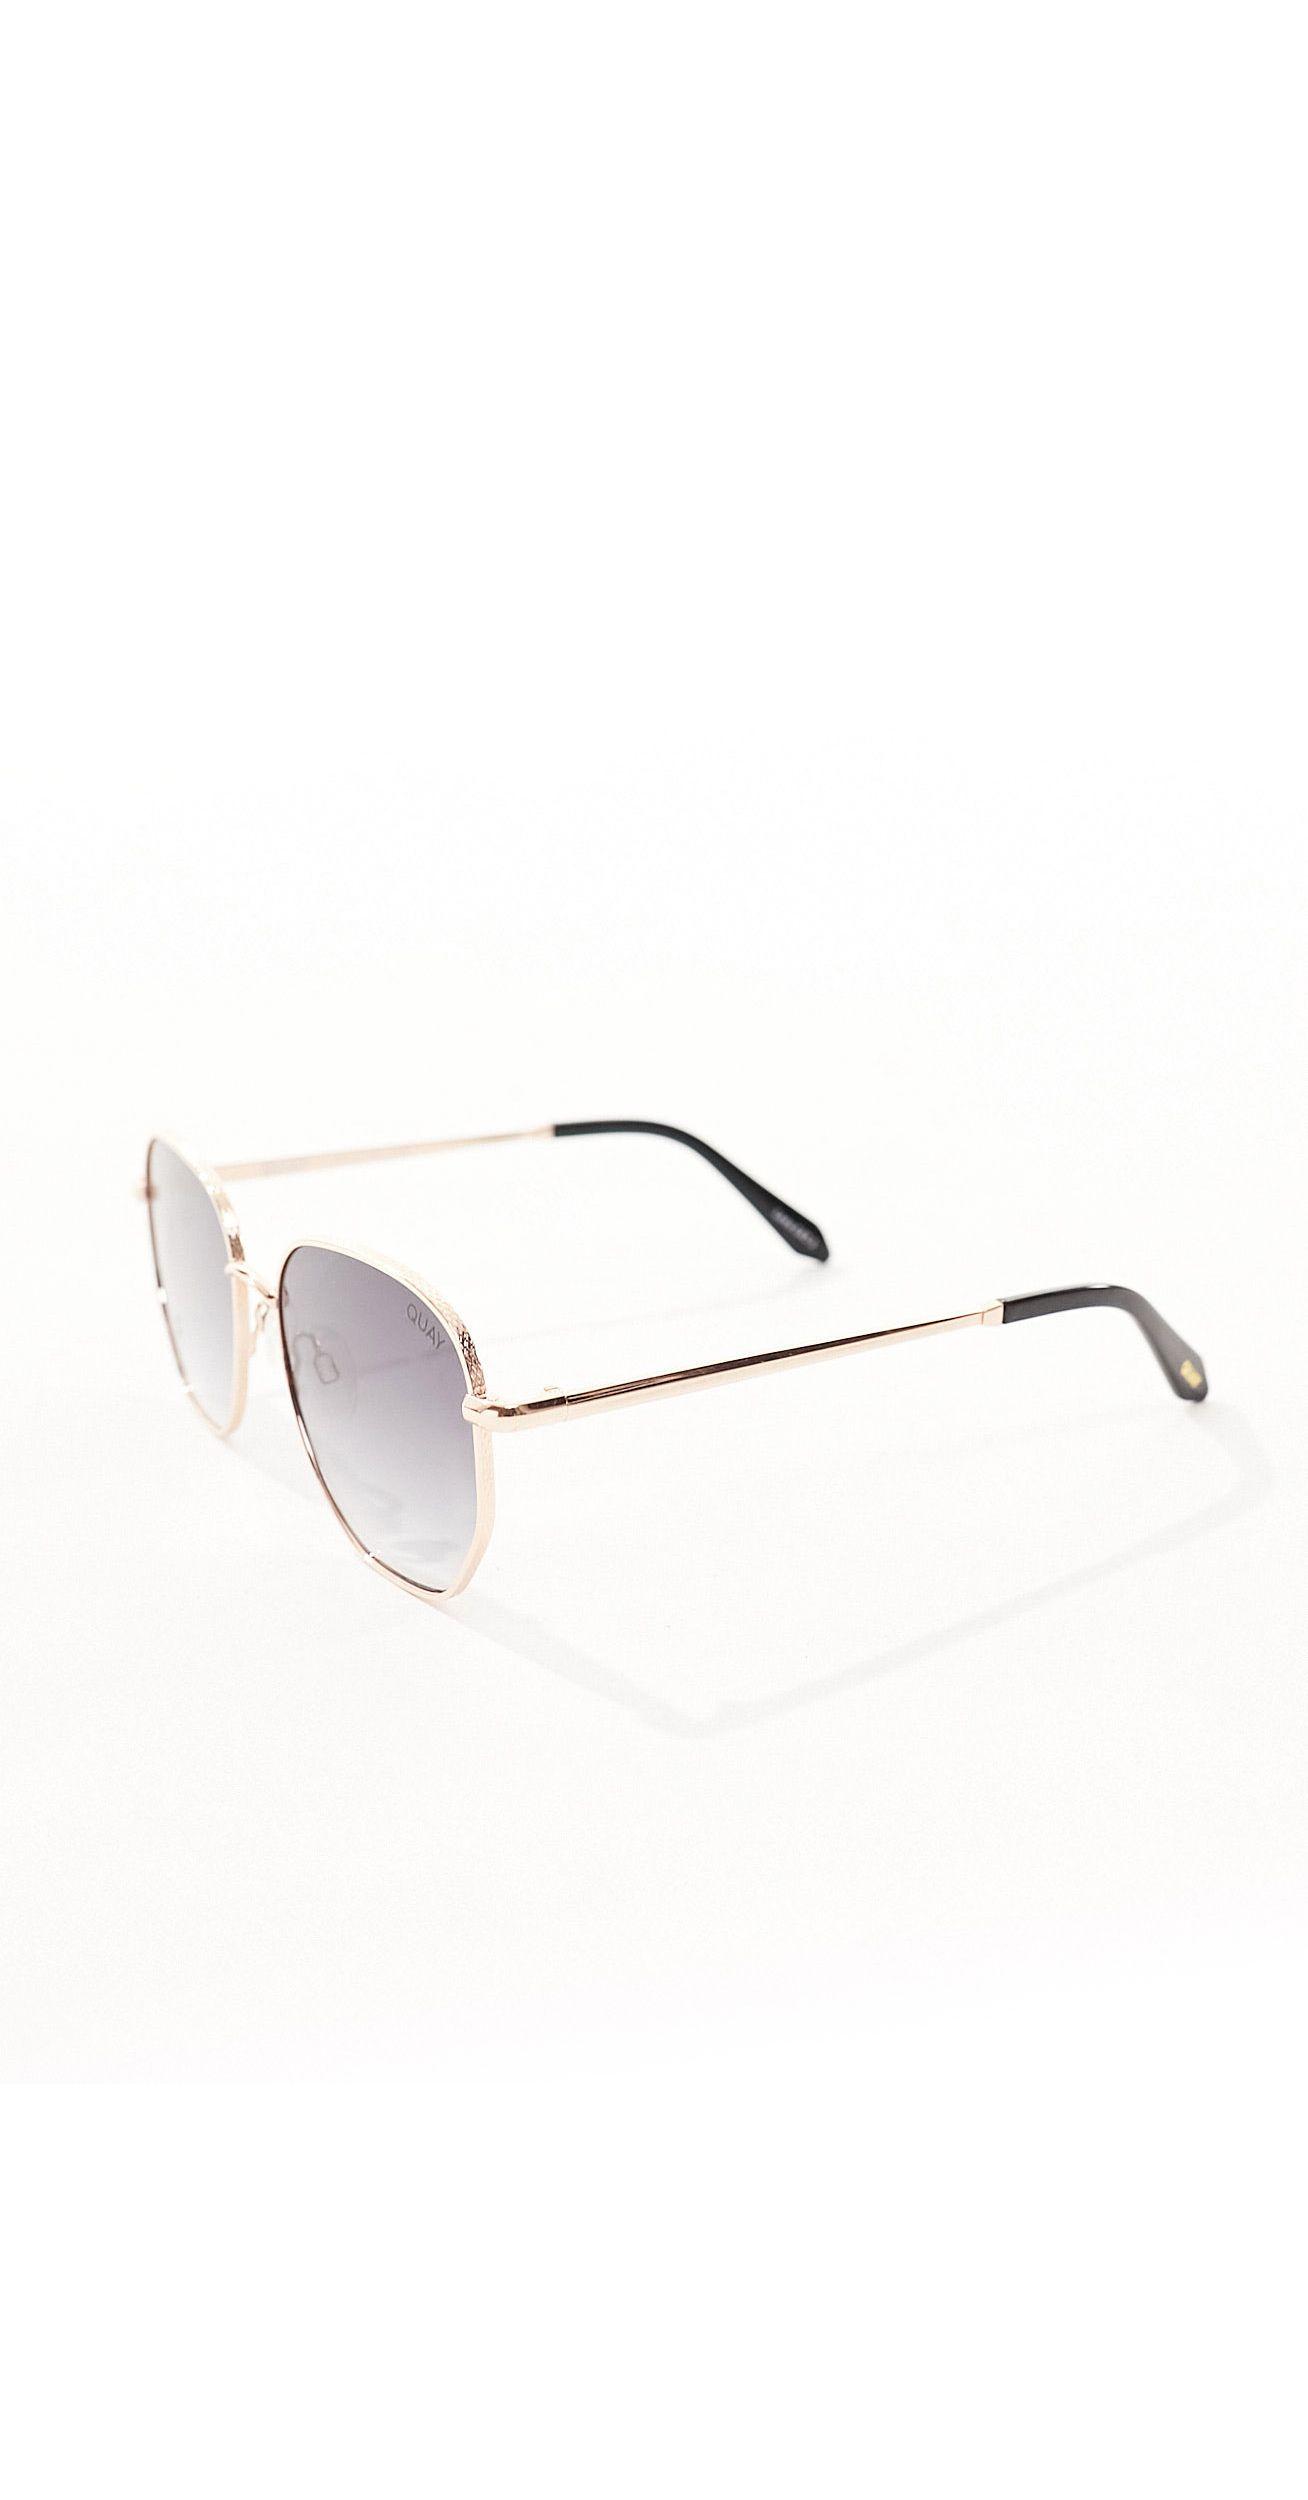 Buy Zak Eye Round Sunglasses Clear For Men & Women Online @ Best Prices in  India | Flipkart.com